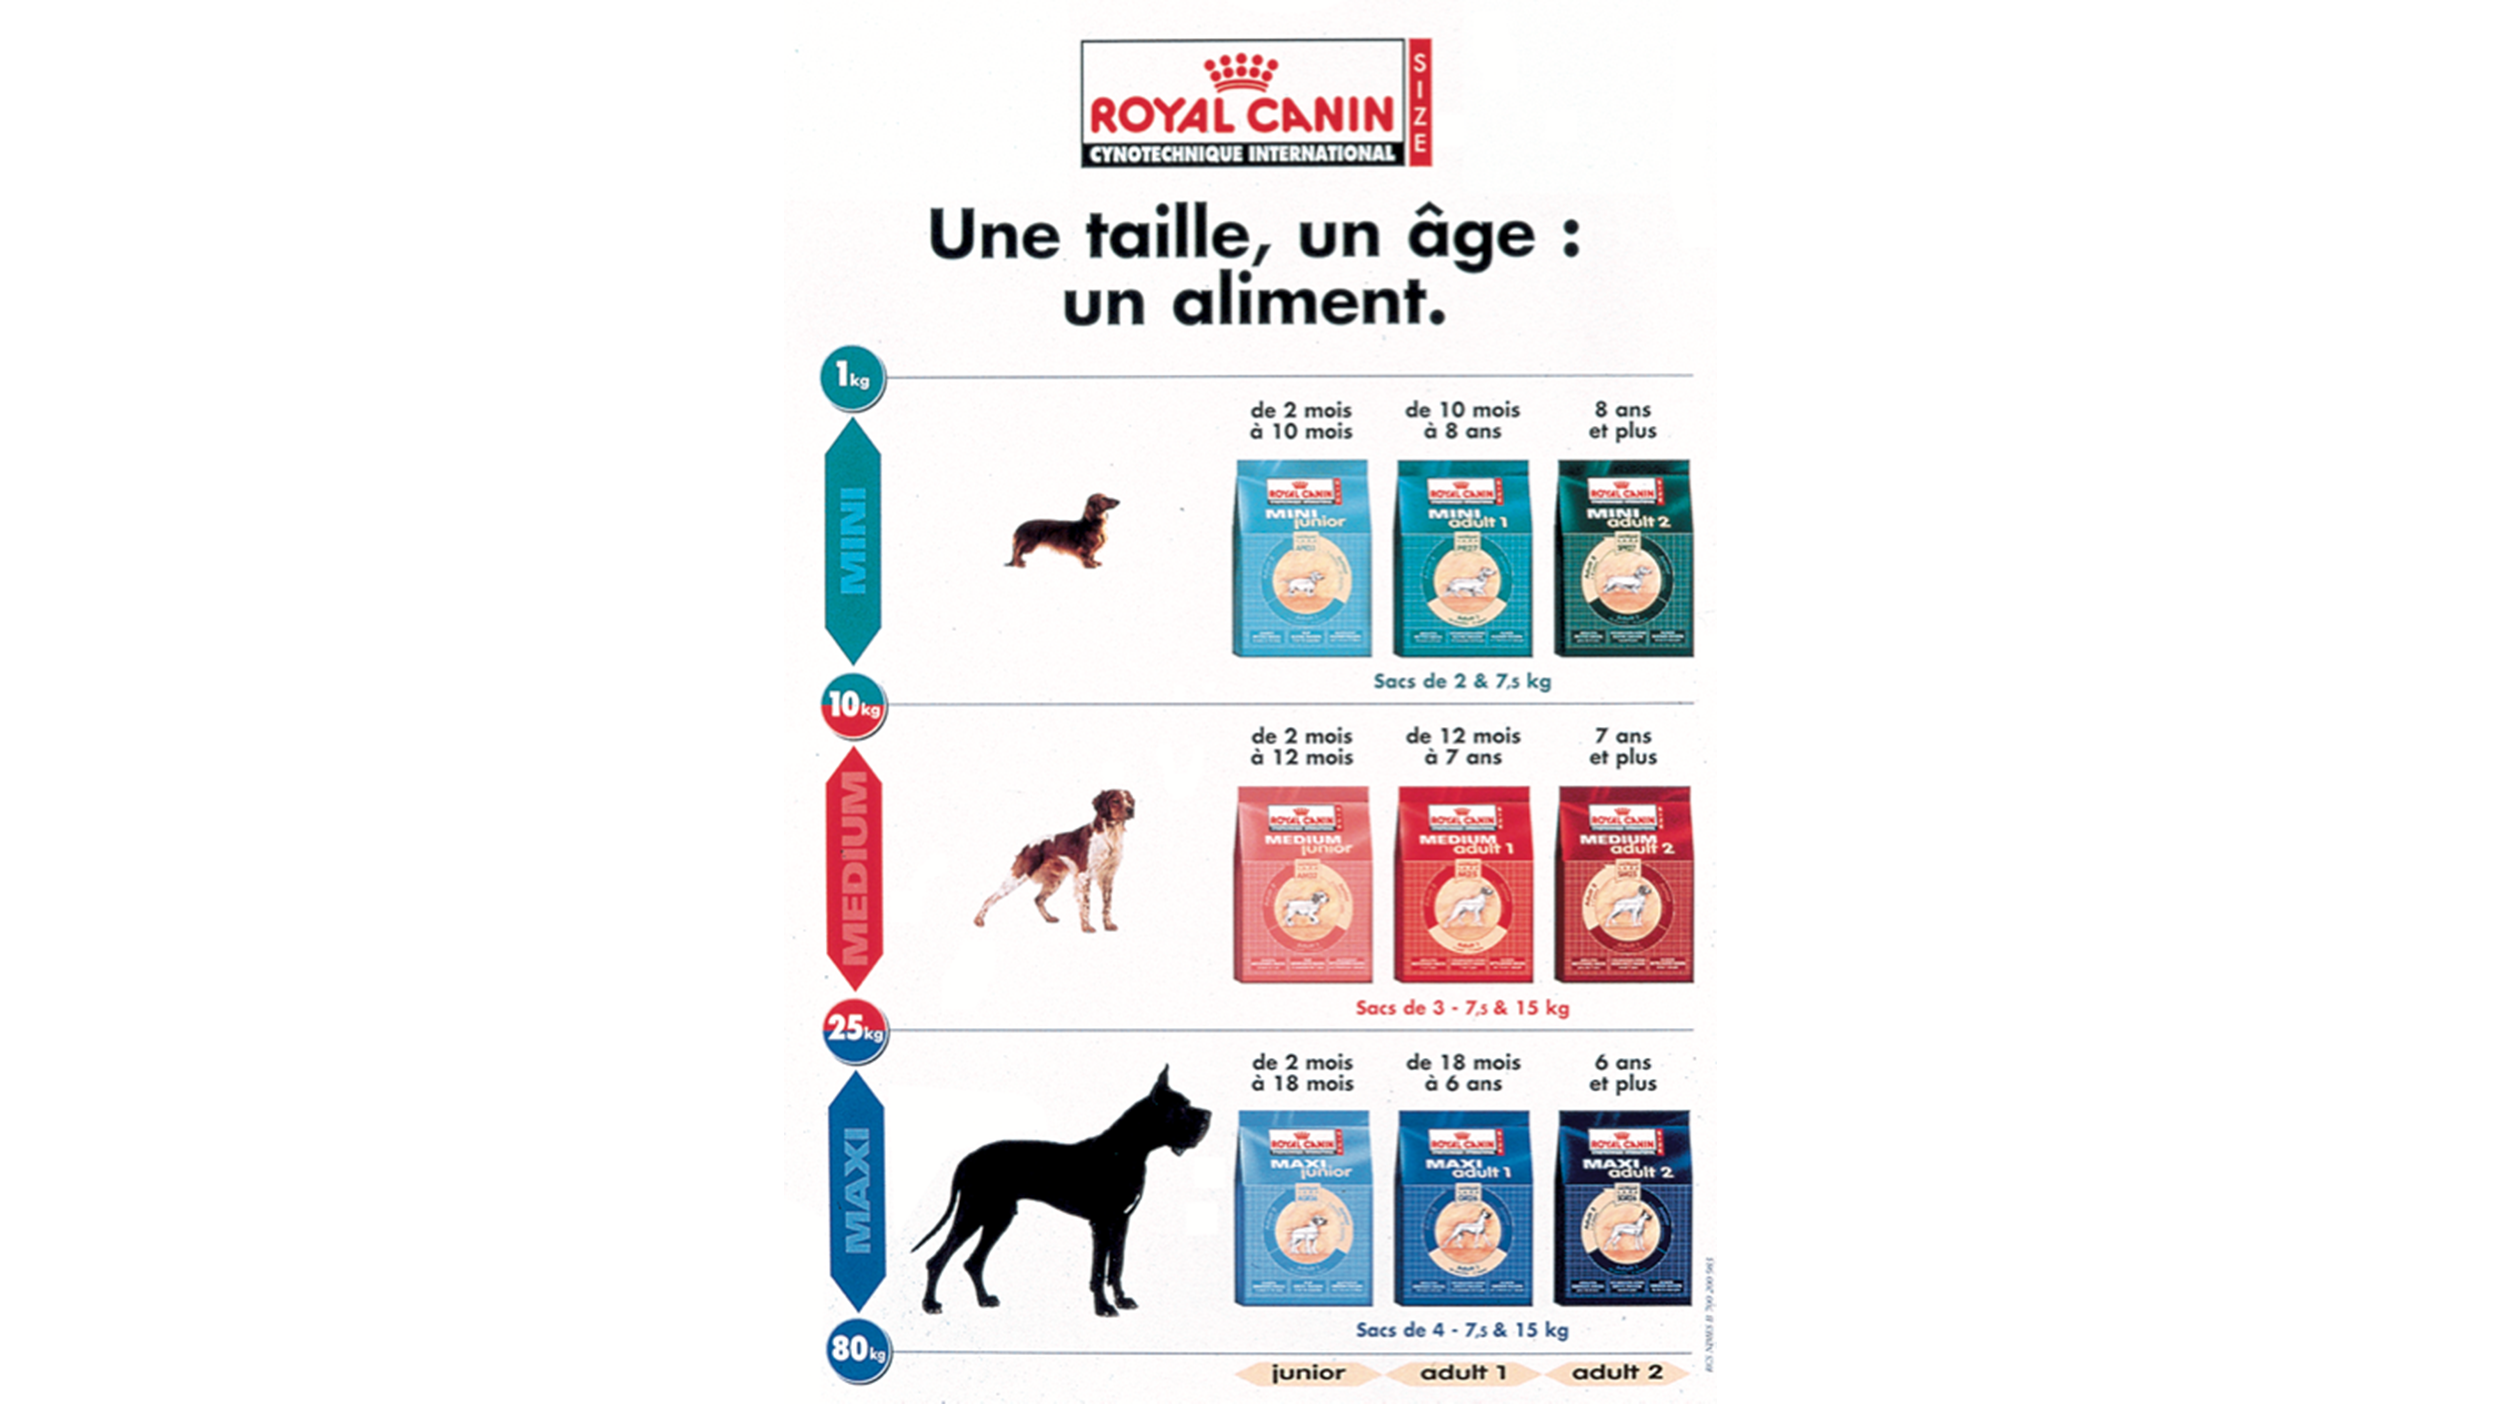 Alimento Royal Canin específica para perros de talla chica, mediana y grande.